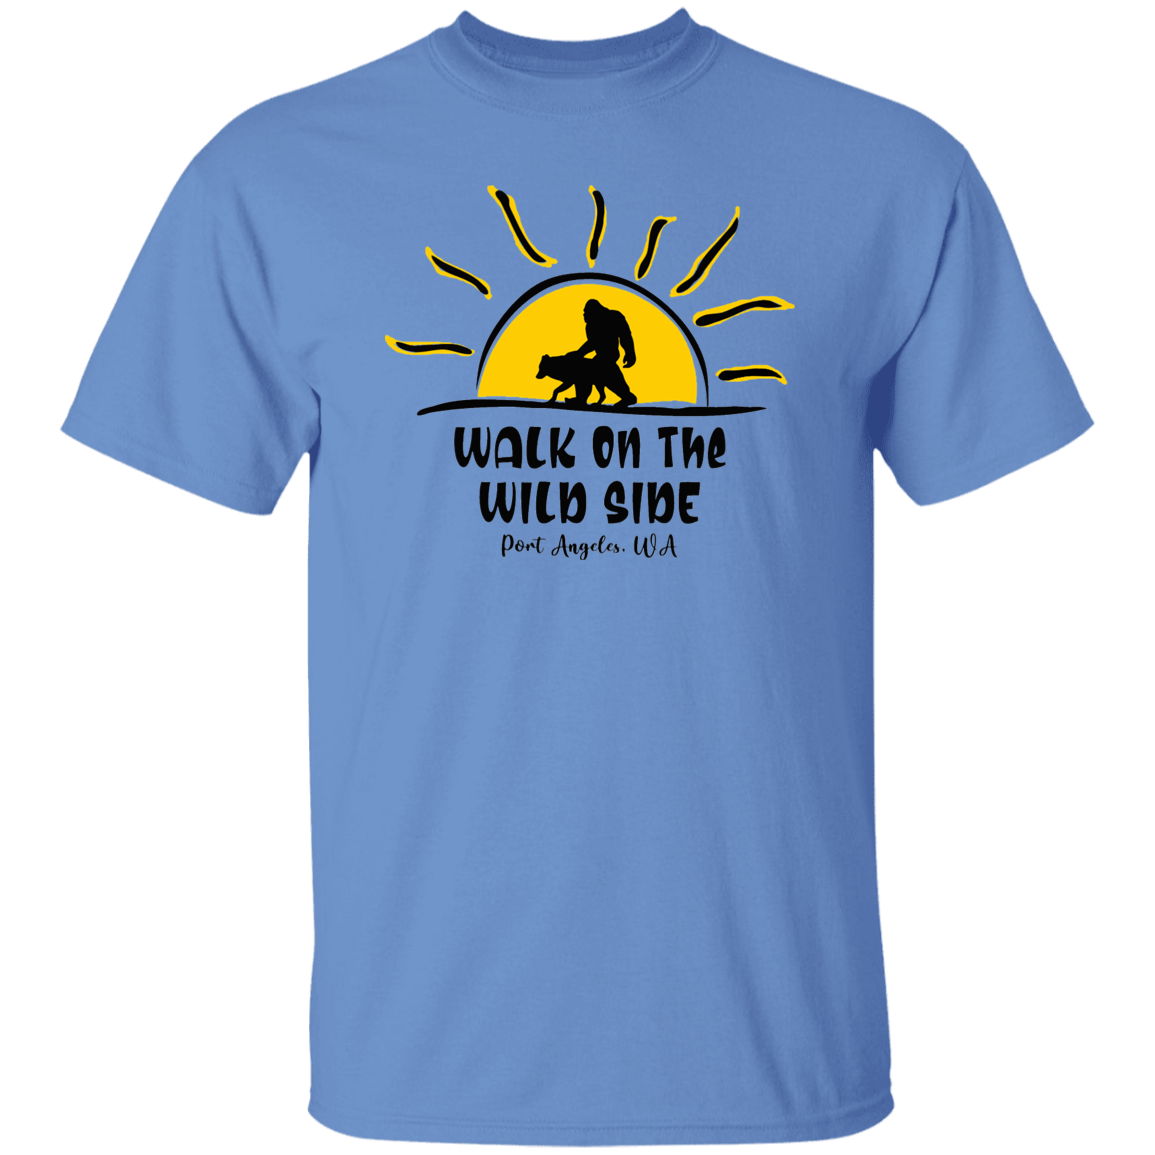 Sasquatch and Wolf Sunset - WILD SIDE - PA T-Shirt